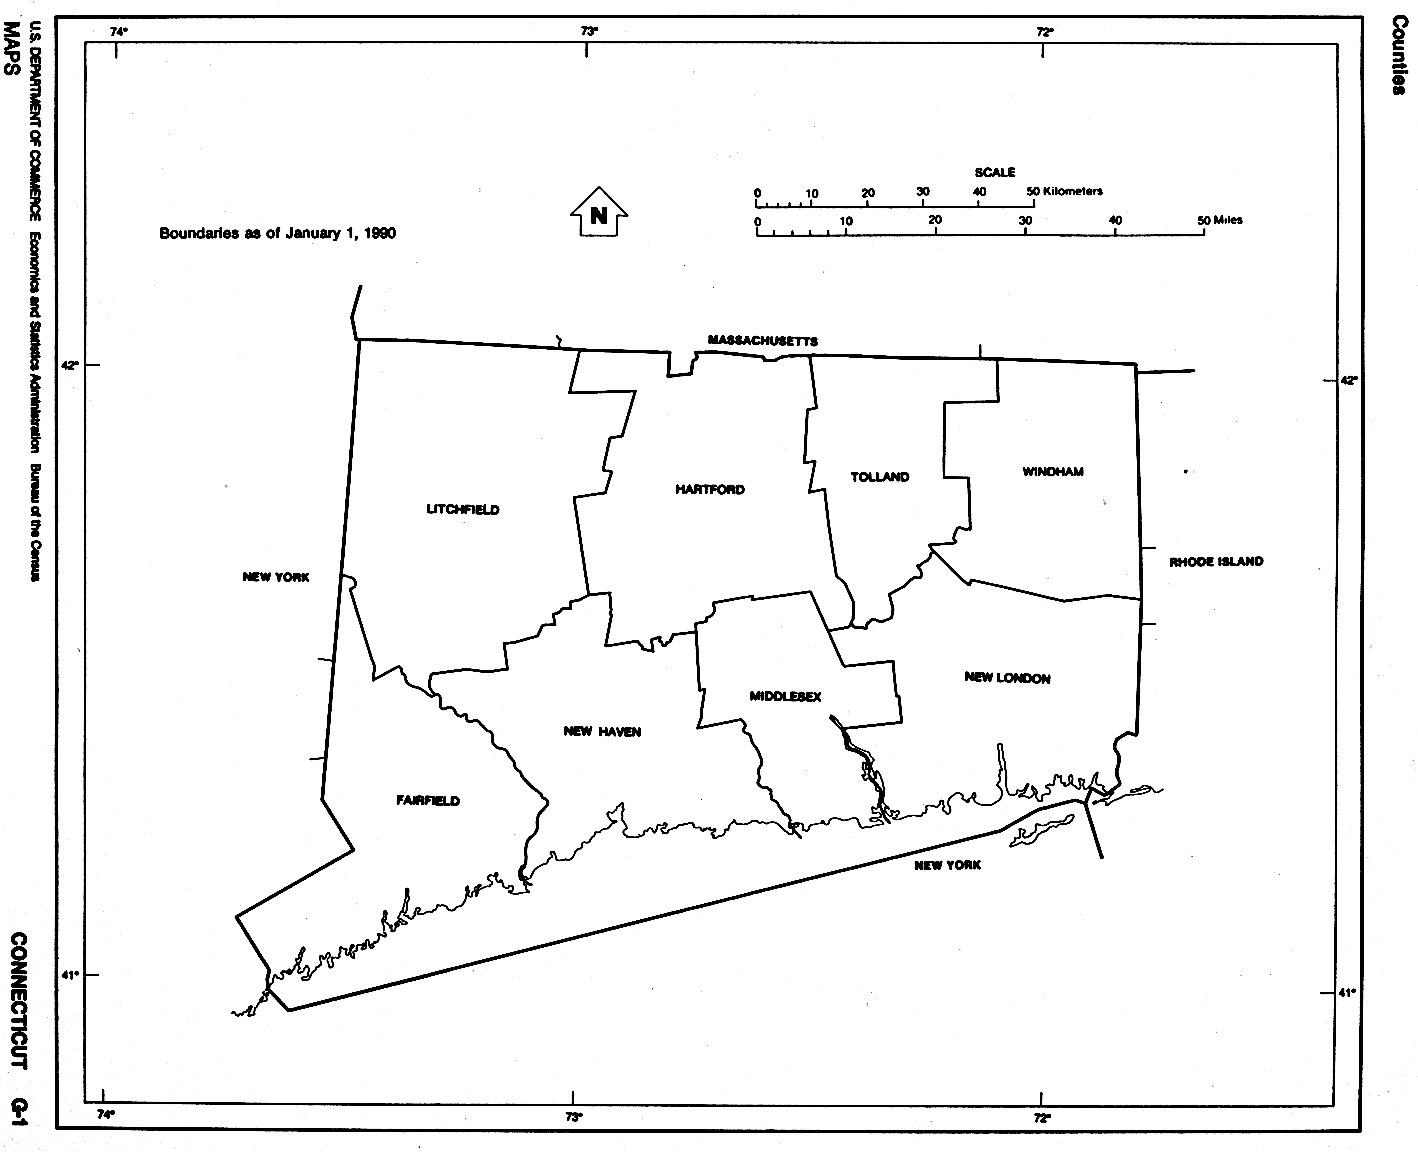  Maps of Connecticut. Connecticut (outline map) U.S. Bureau of the Census 1990 (53K) 